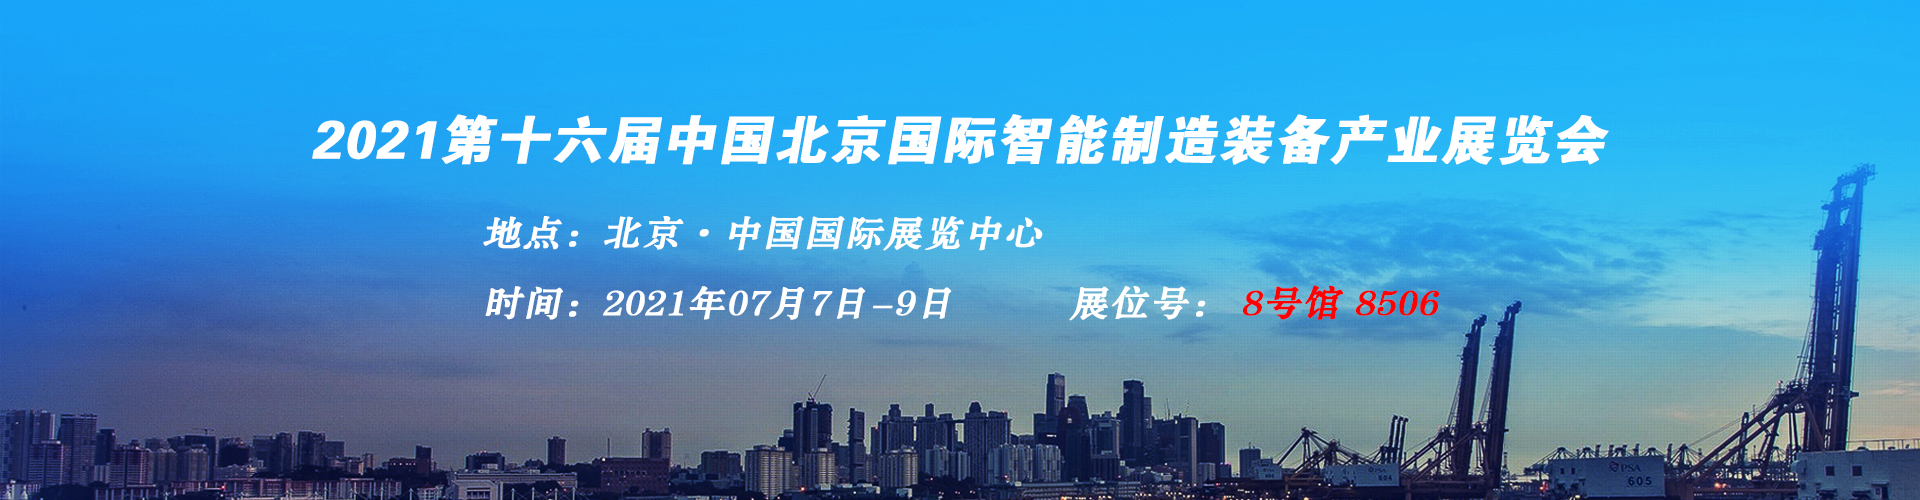 博尔金激光-参加第十六届中国北京国际智能制造装备产业展览会